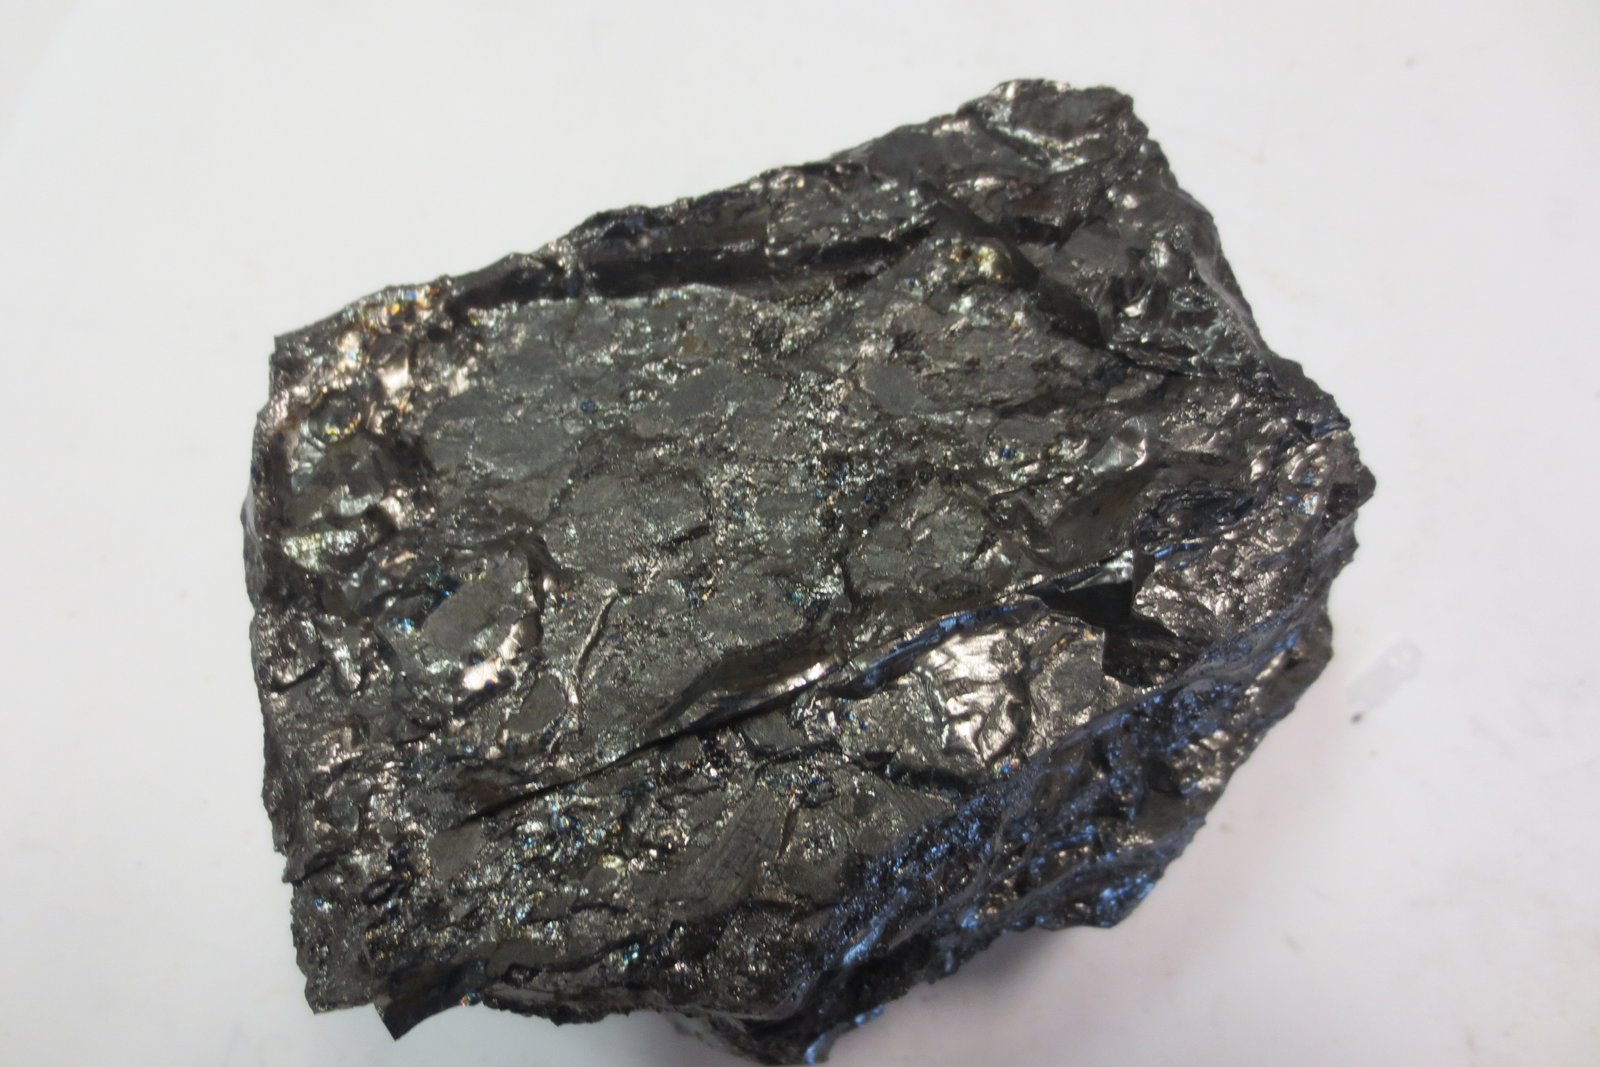 الفحم الصلب (الأنثراسايت) Anthracite